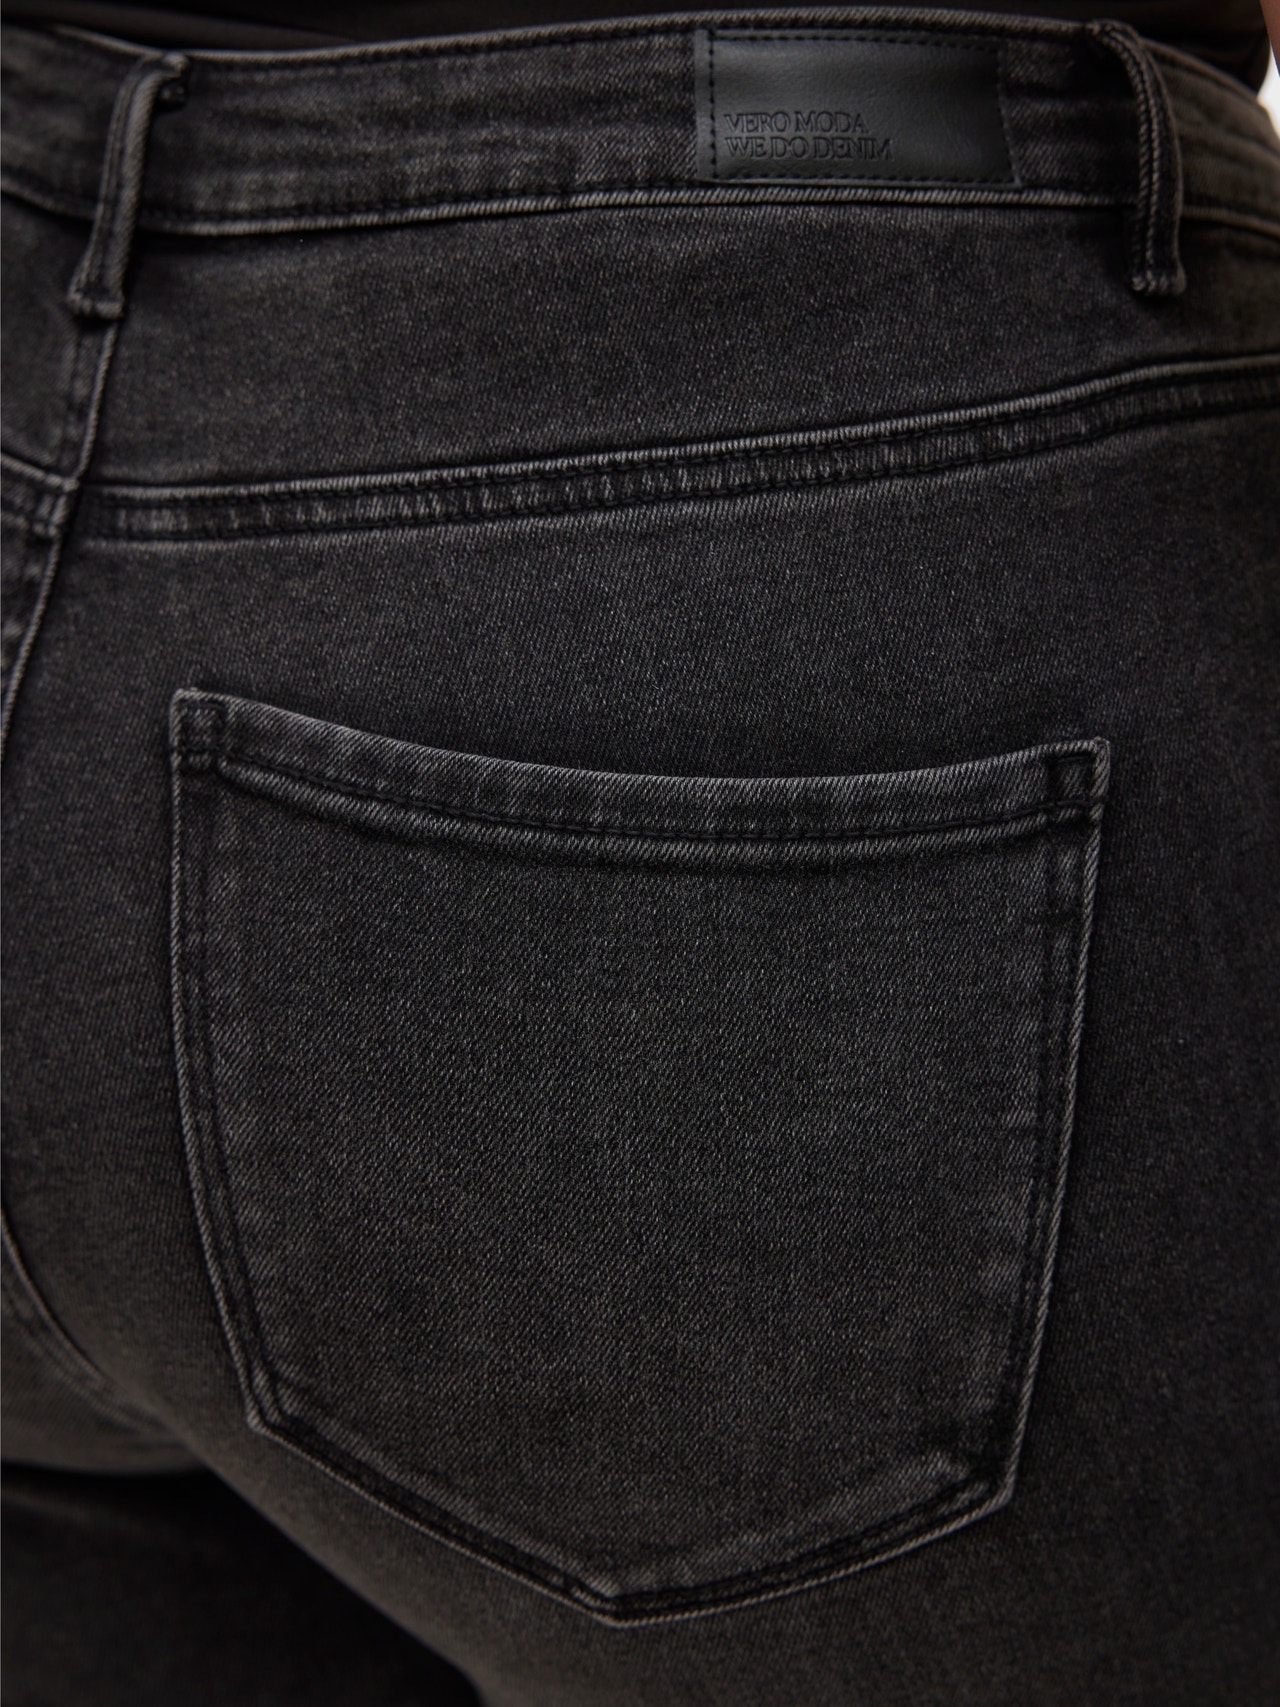 Vero Moda VMSOPHIA Slim Fit Jeans -Black Denim - 10315570